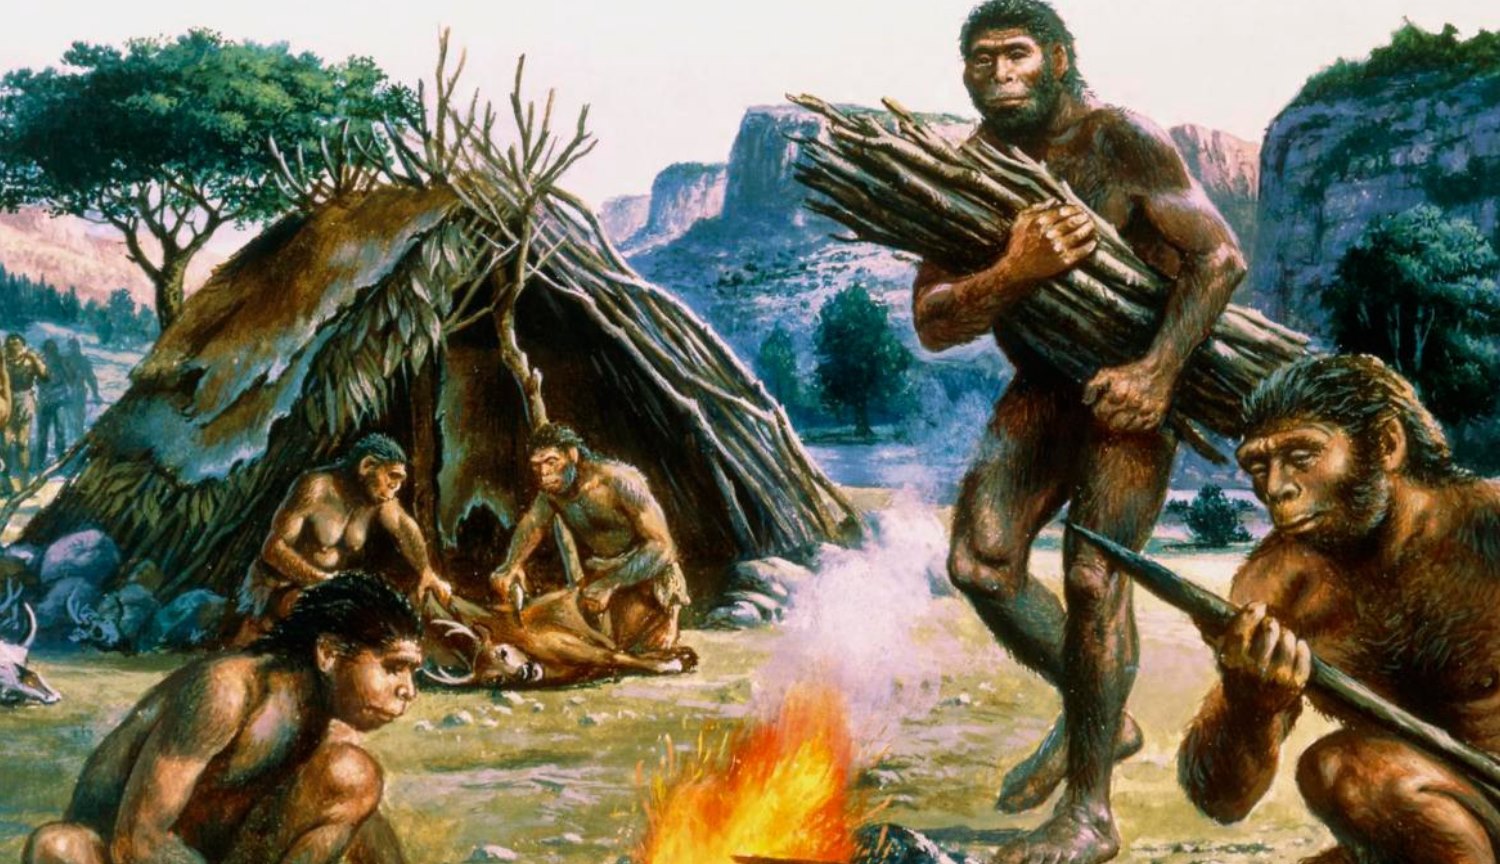 Les artistes de mal dépeint l'homme de néandertal: vous avez trouvé un témoignage de leur ligne de posture